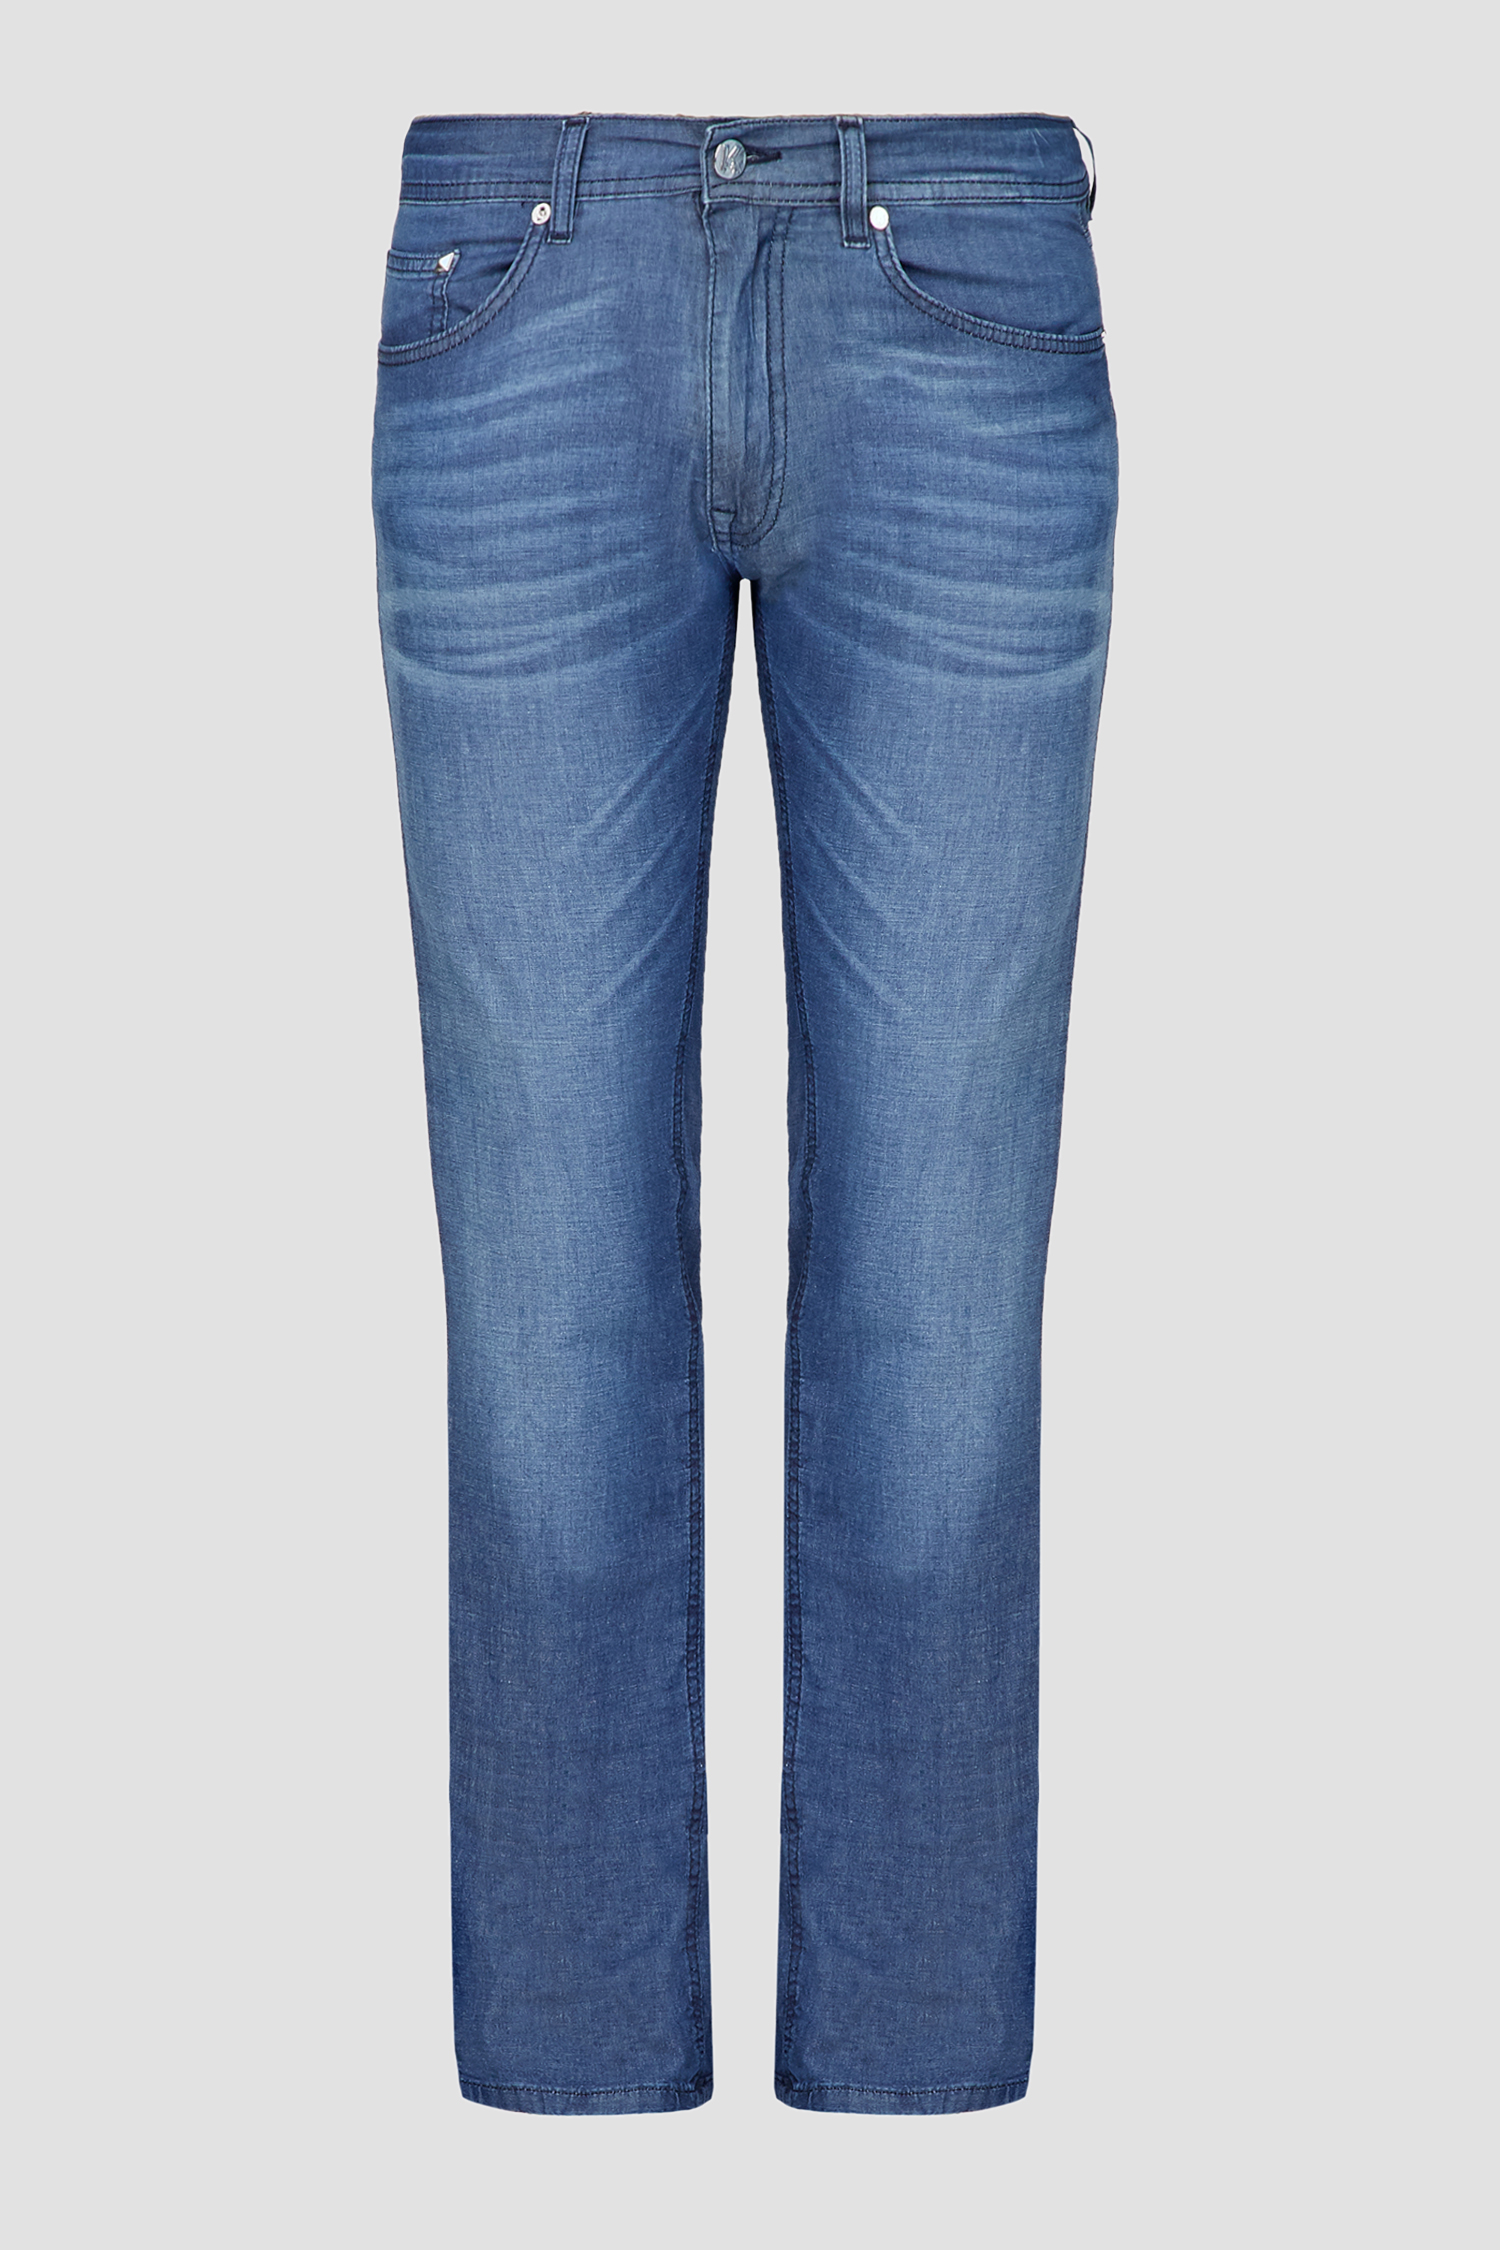 Чоловічі сині джинси Karl Lagerfeld 521806.265840;690